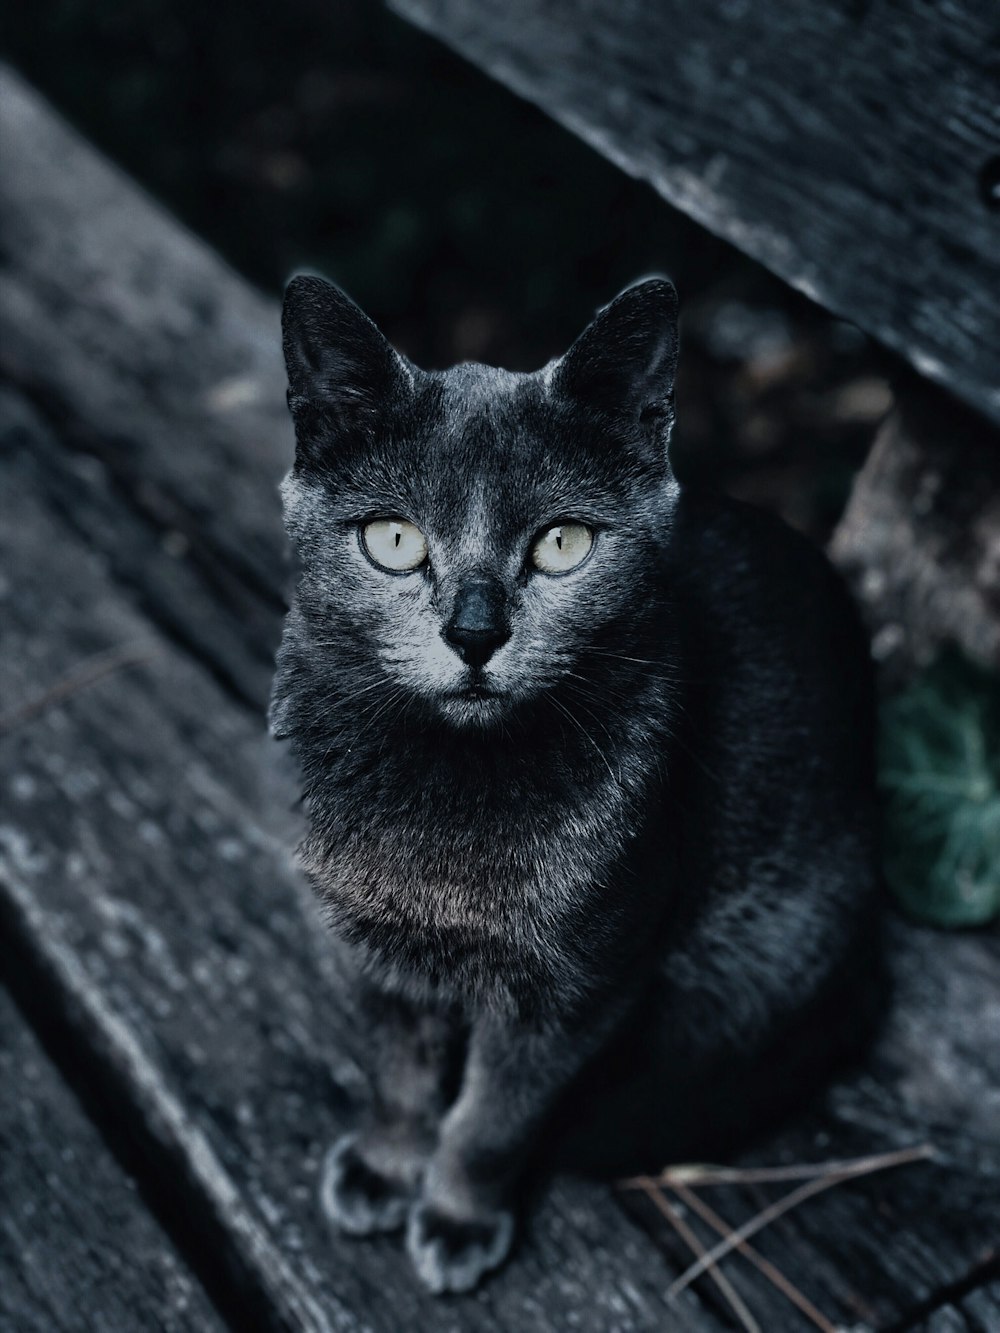 fotografia in scala di grigi del gatto